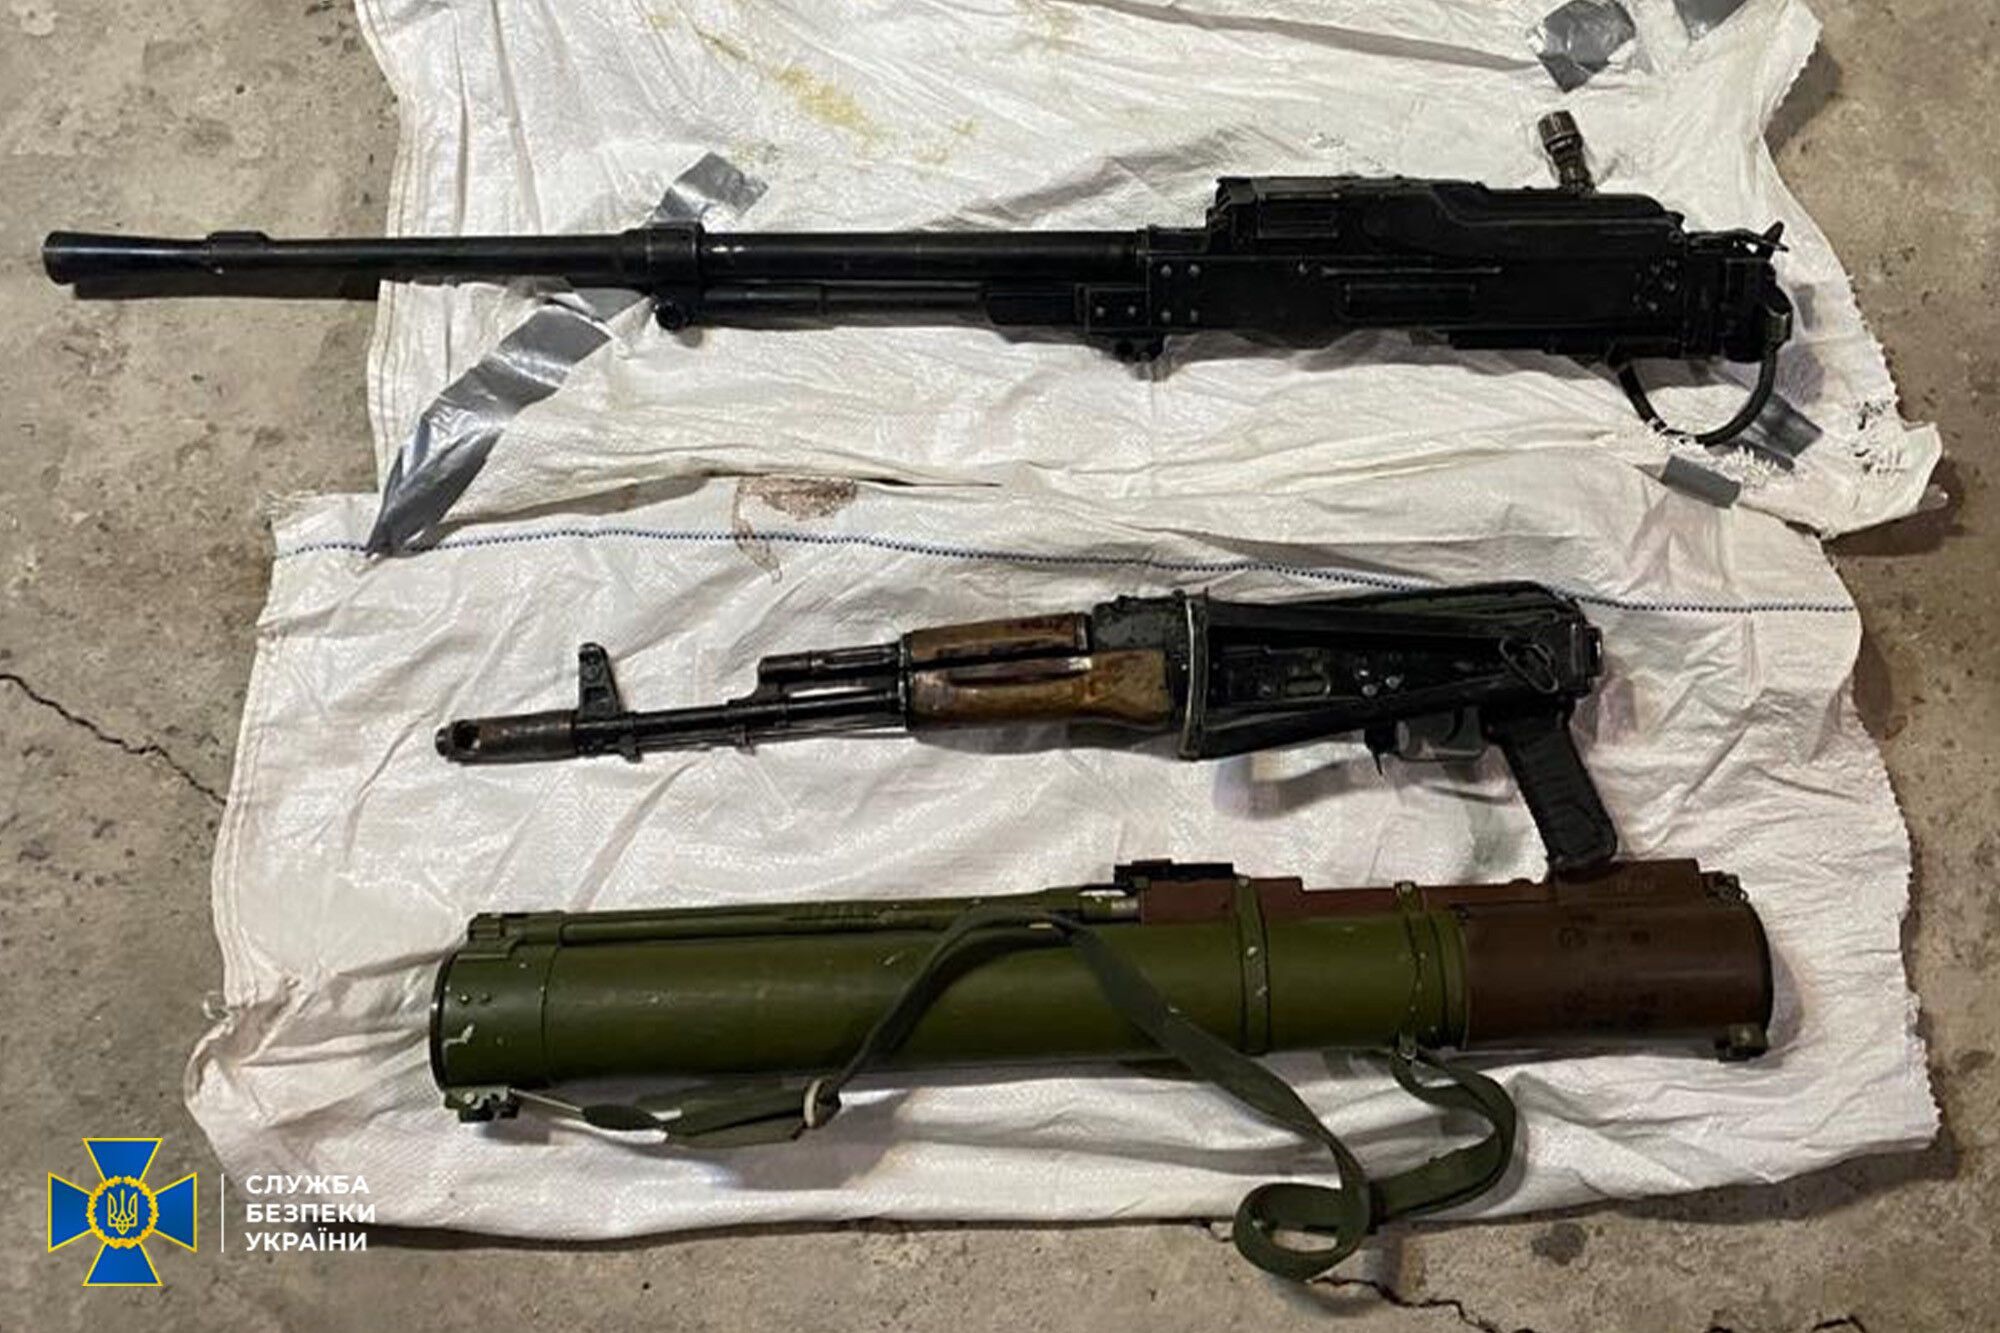 Черные оружейники пытались продать российское оружие